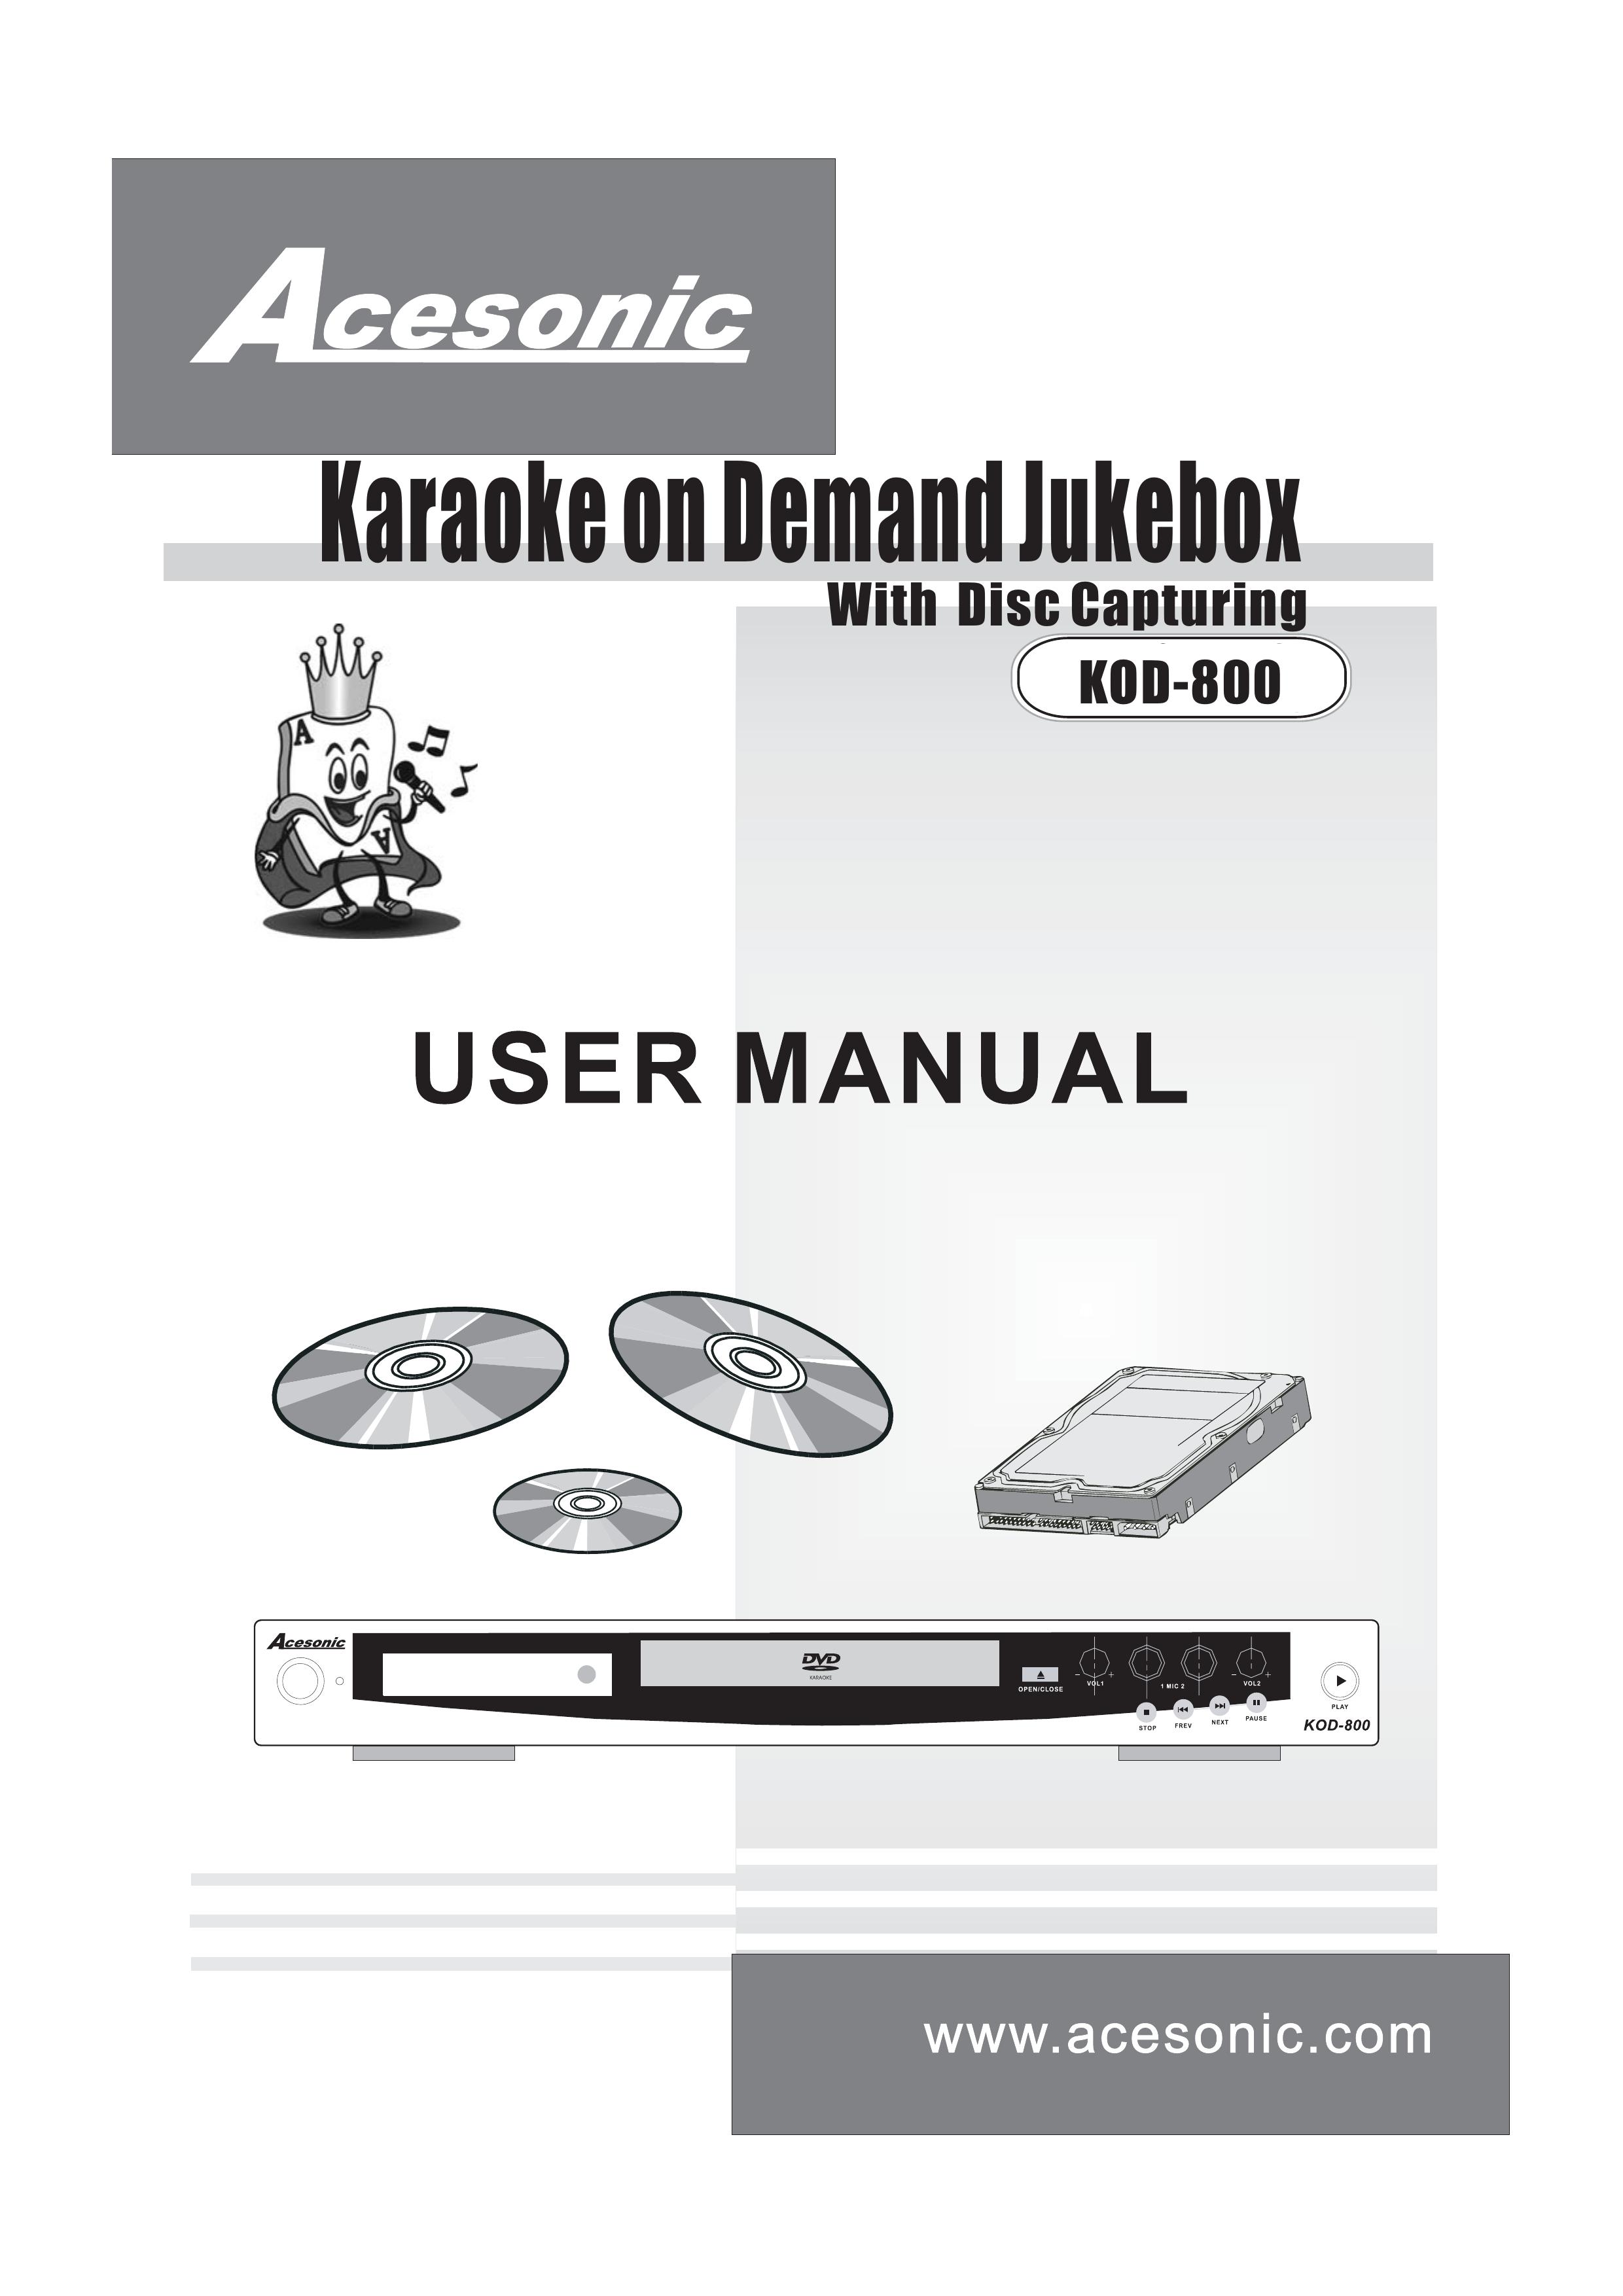 Acesonic KOD-800 Karaoke Machine User Manual